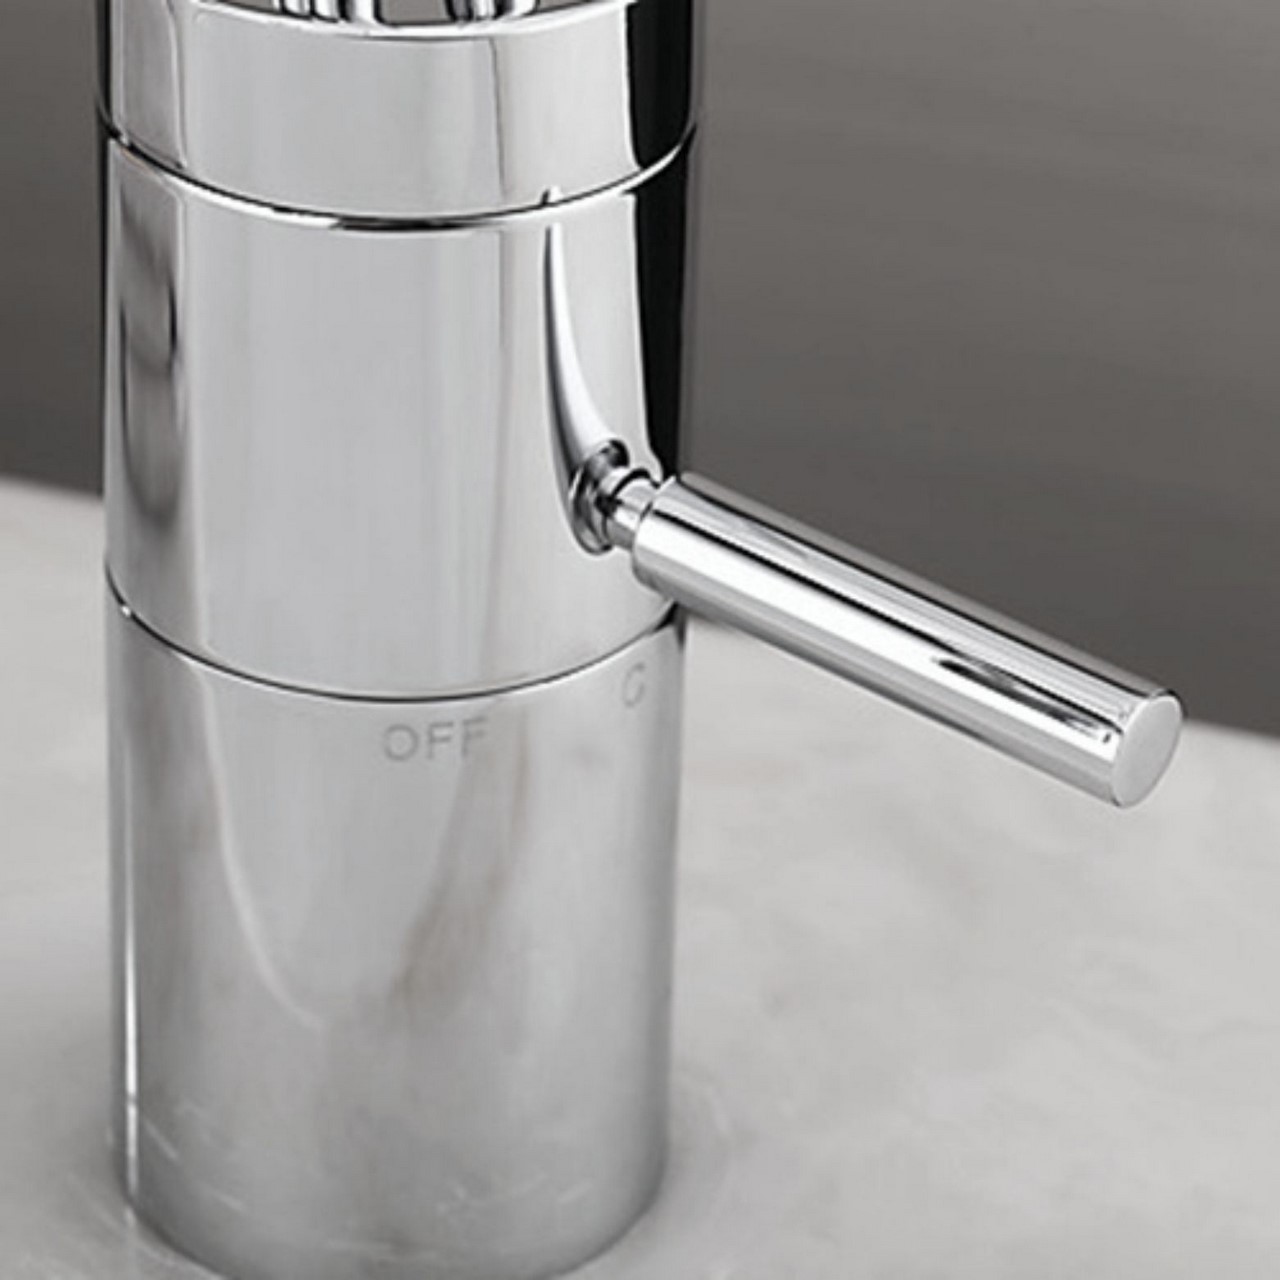 Aqua Filli Single Lever Bathroom Vanity Faucet